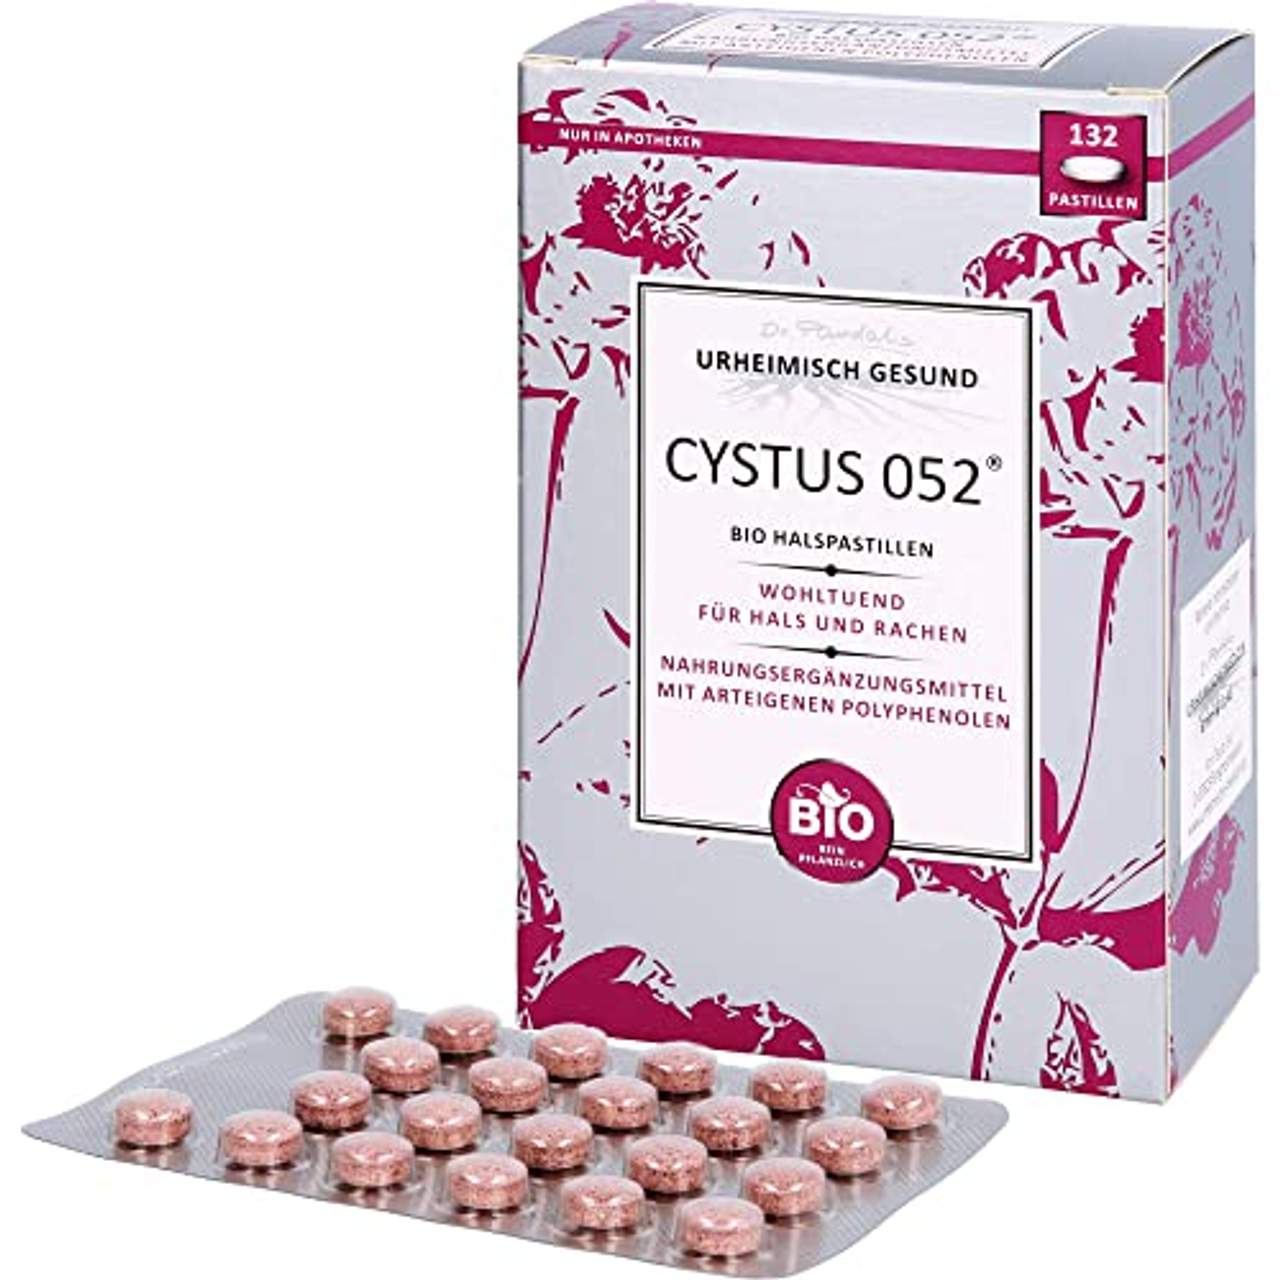 Cystus 052 Bio Halspastillen wohltuend